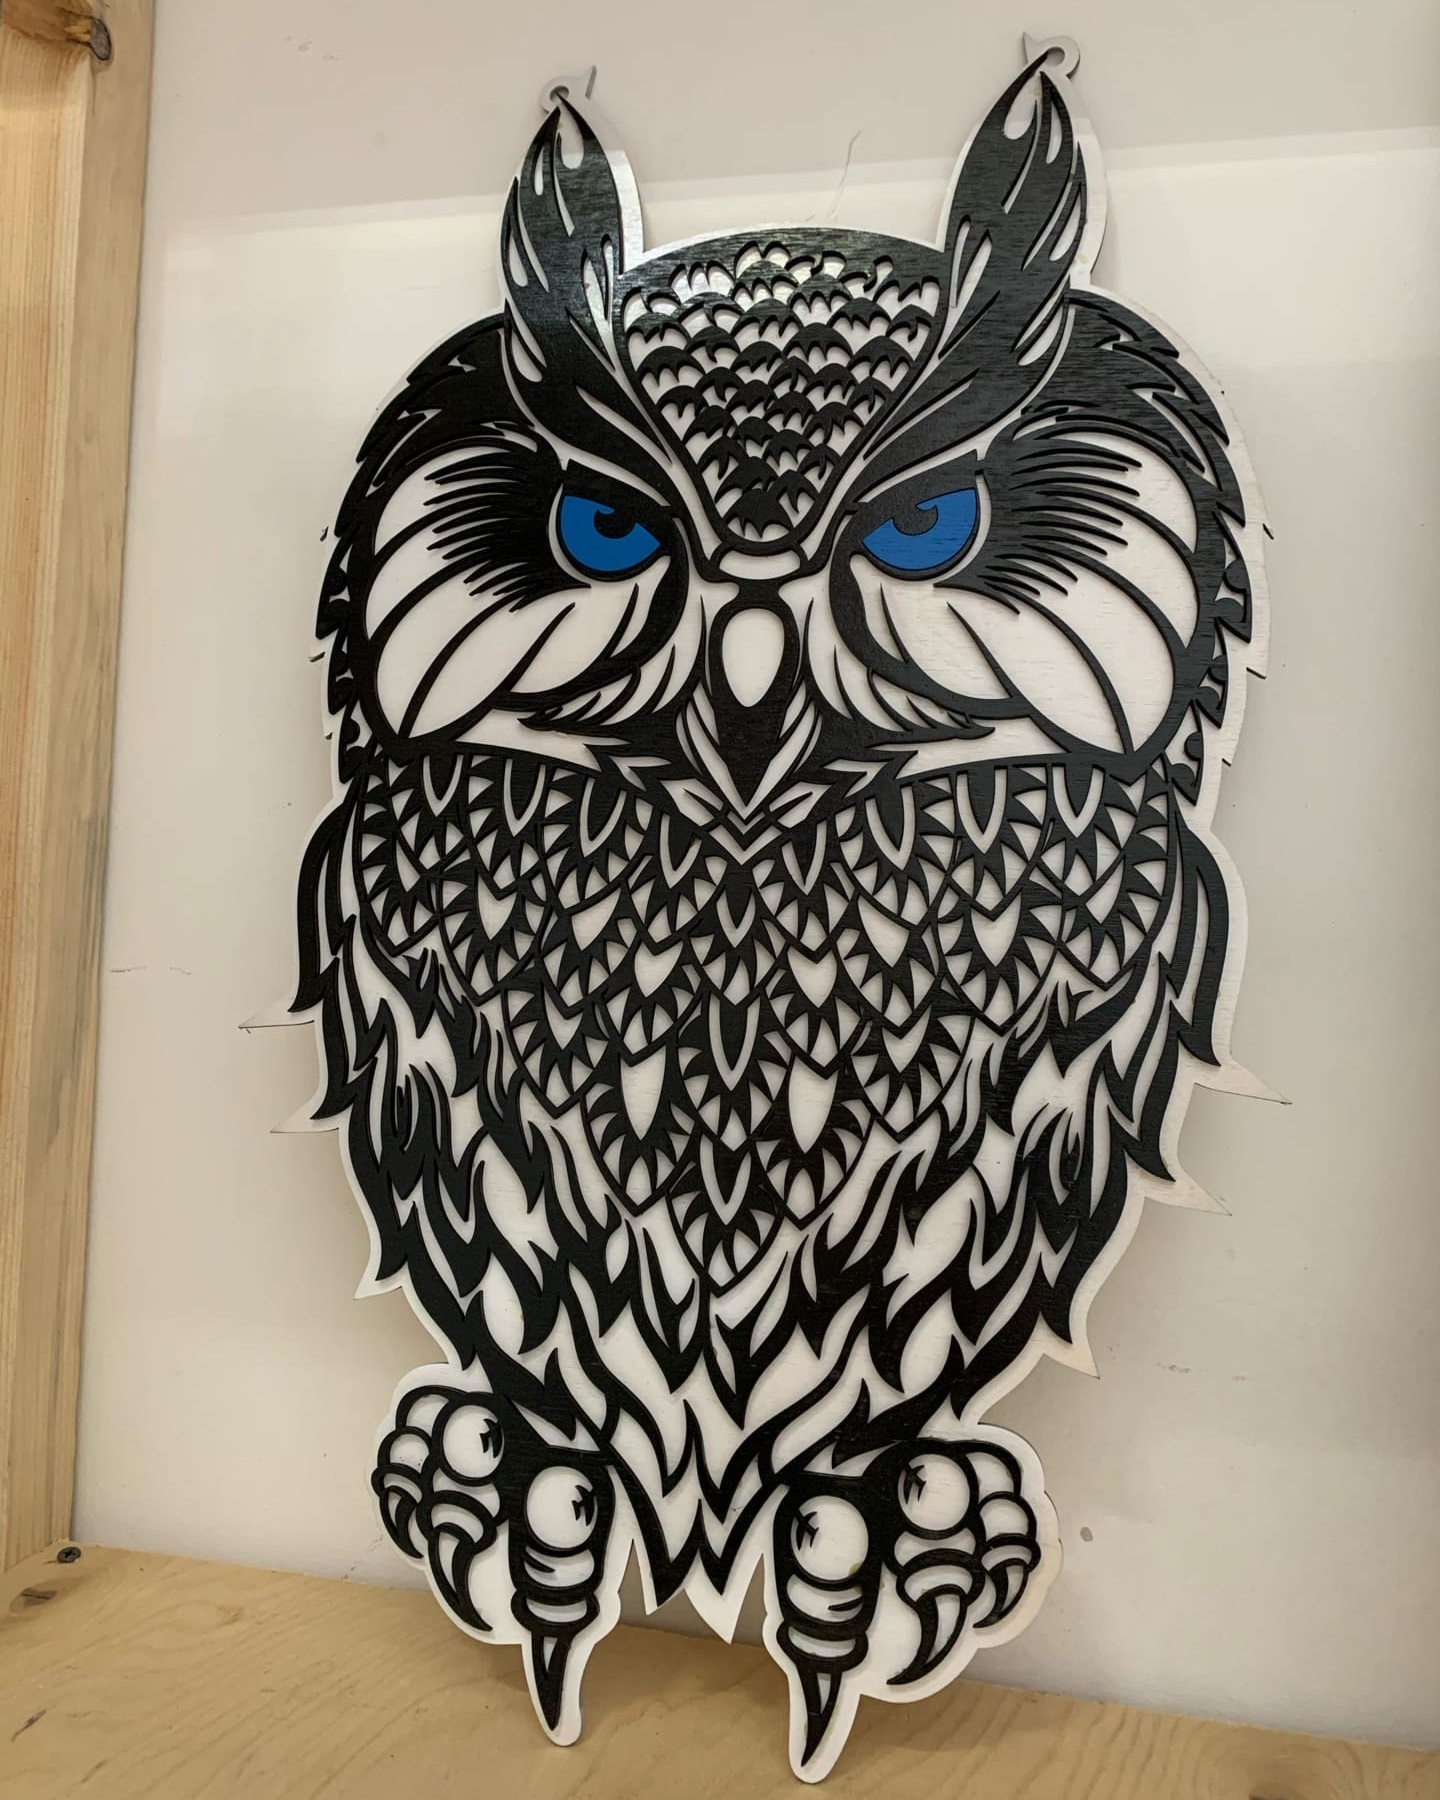 Bảng điều khiển trang trí tường bằng laser Cut Owls